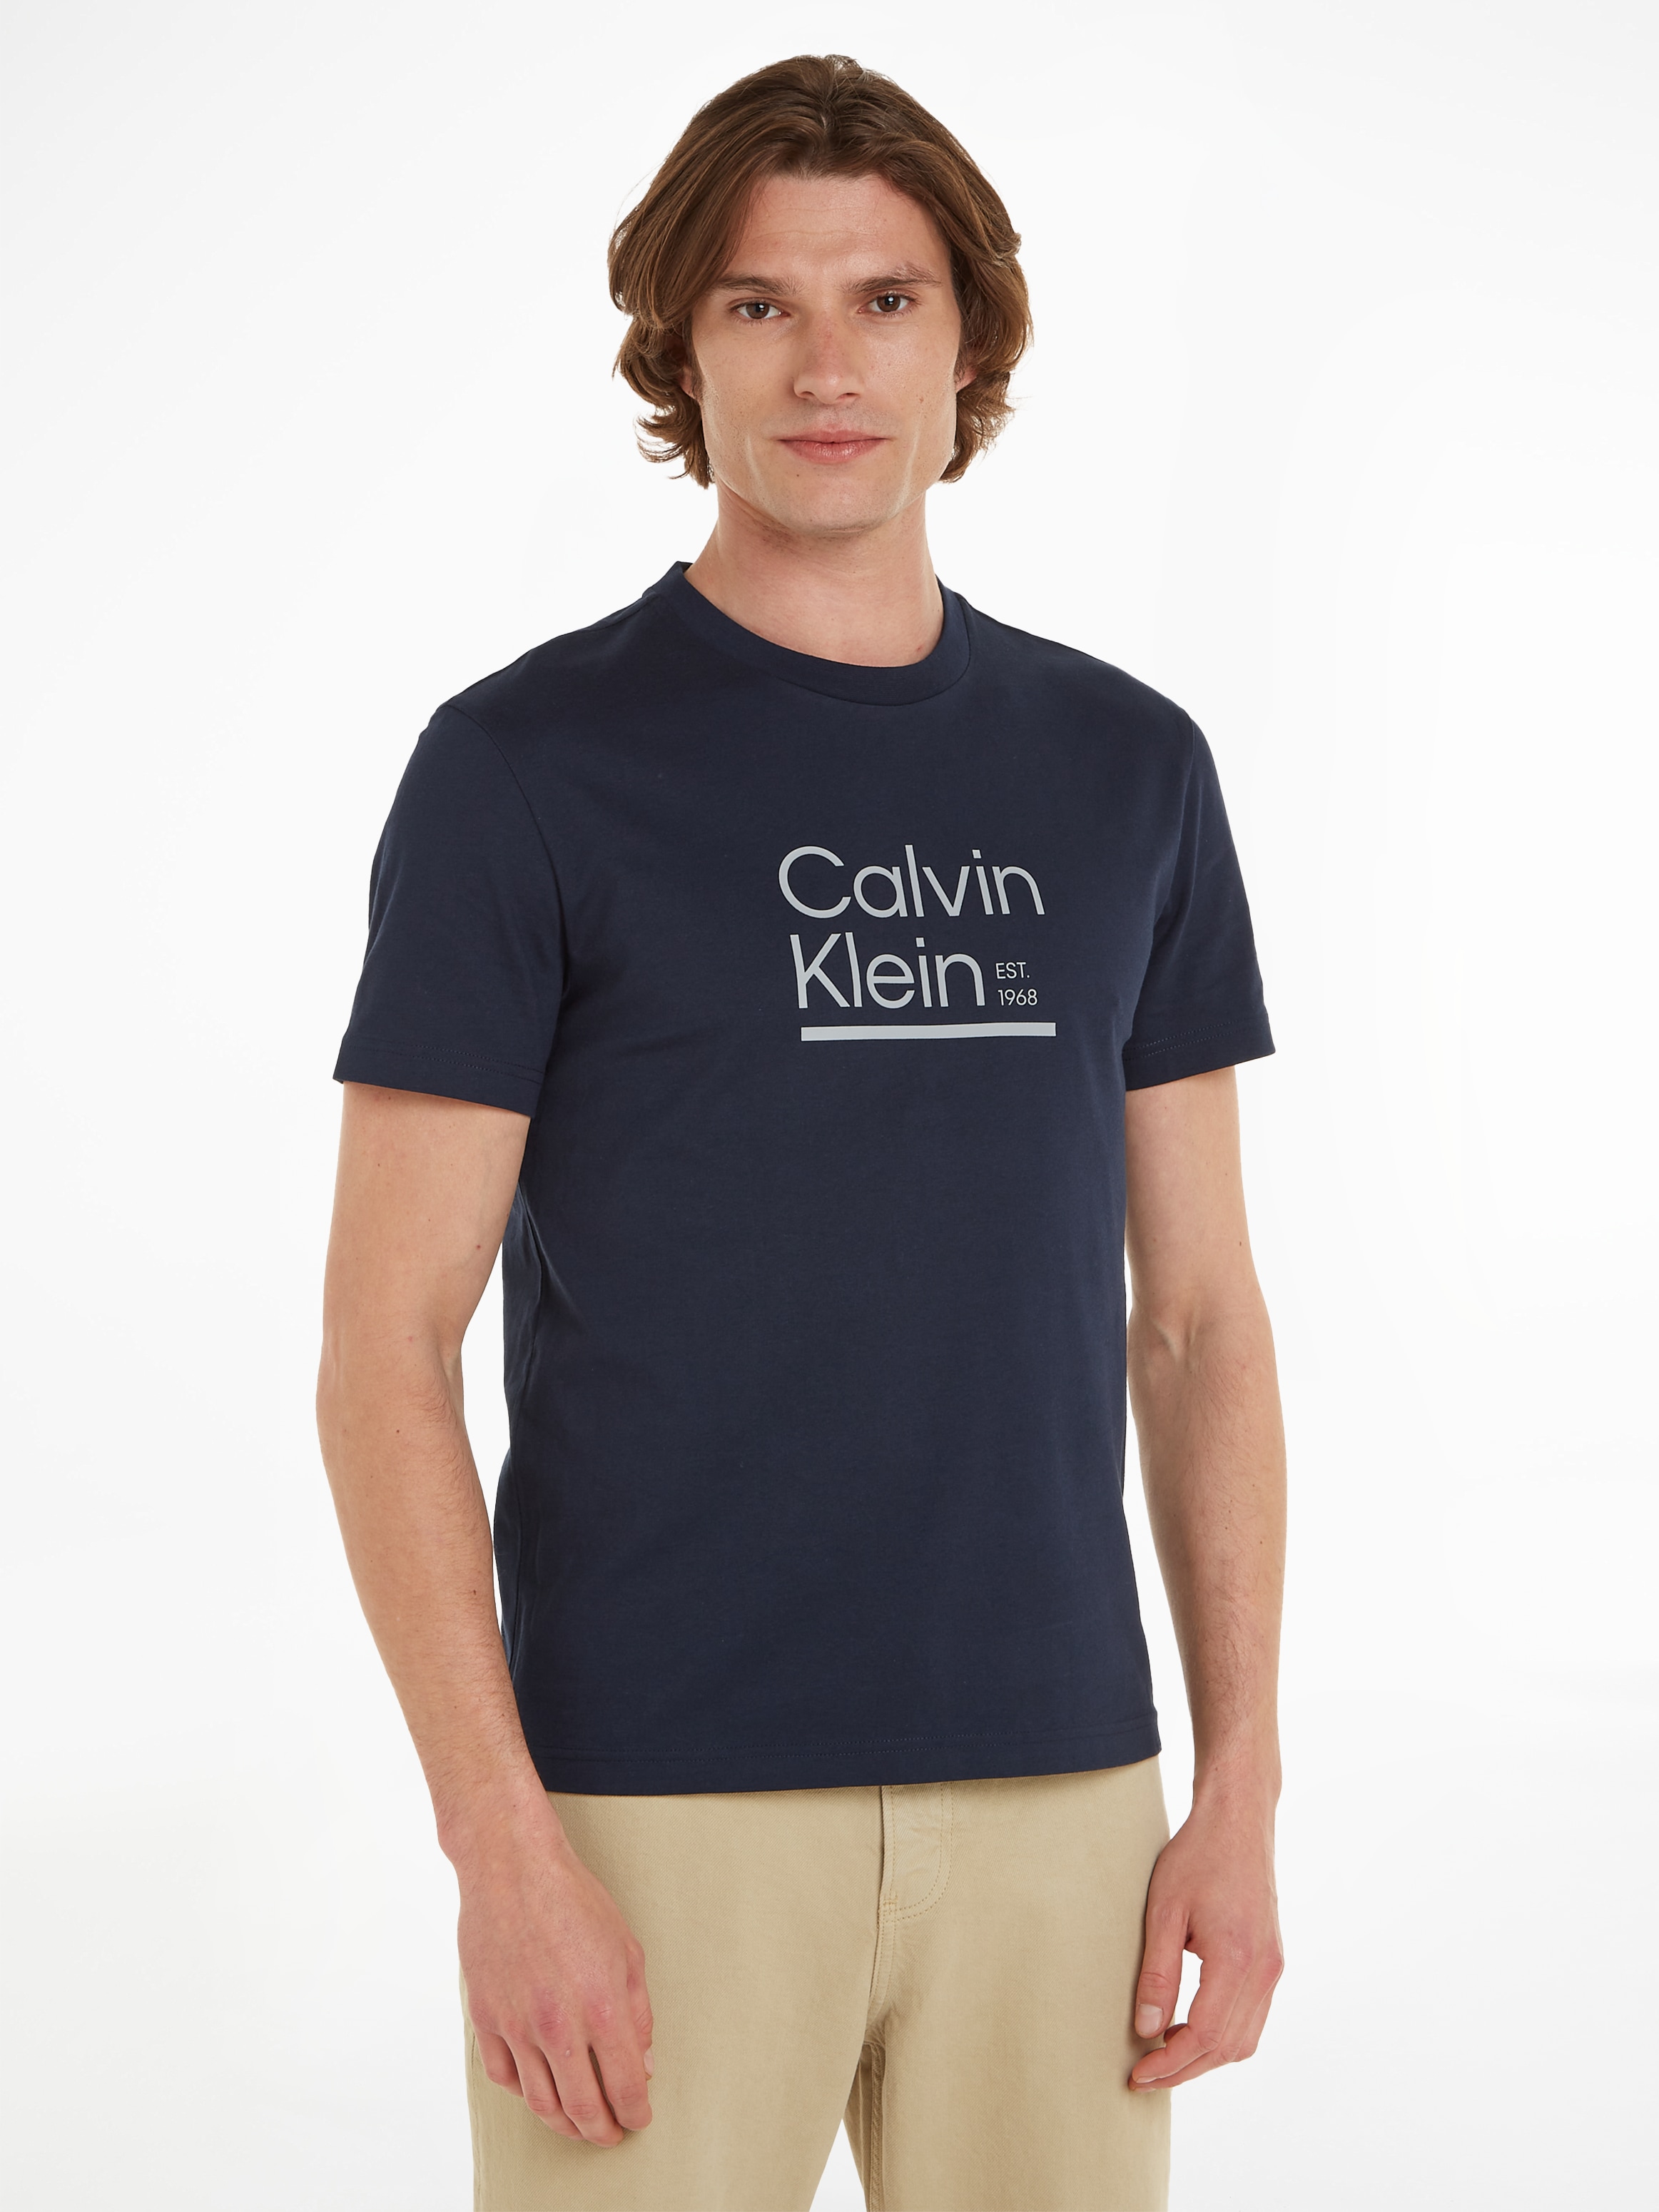 »CONTRAST LINE Calvin LOGO für CK-Logodruck | Klein mit ▷ BAUR T-SHIRT«, T-Shirt